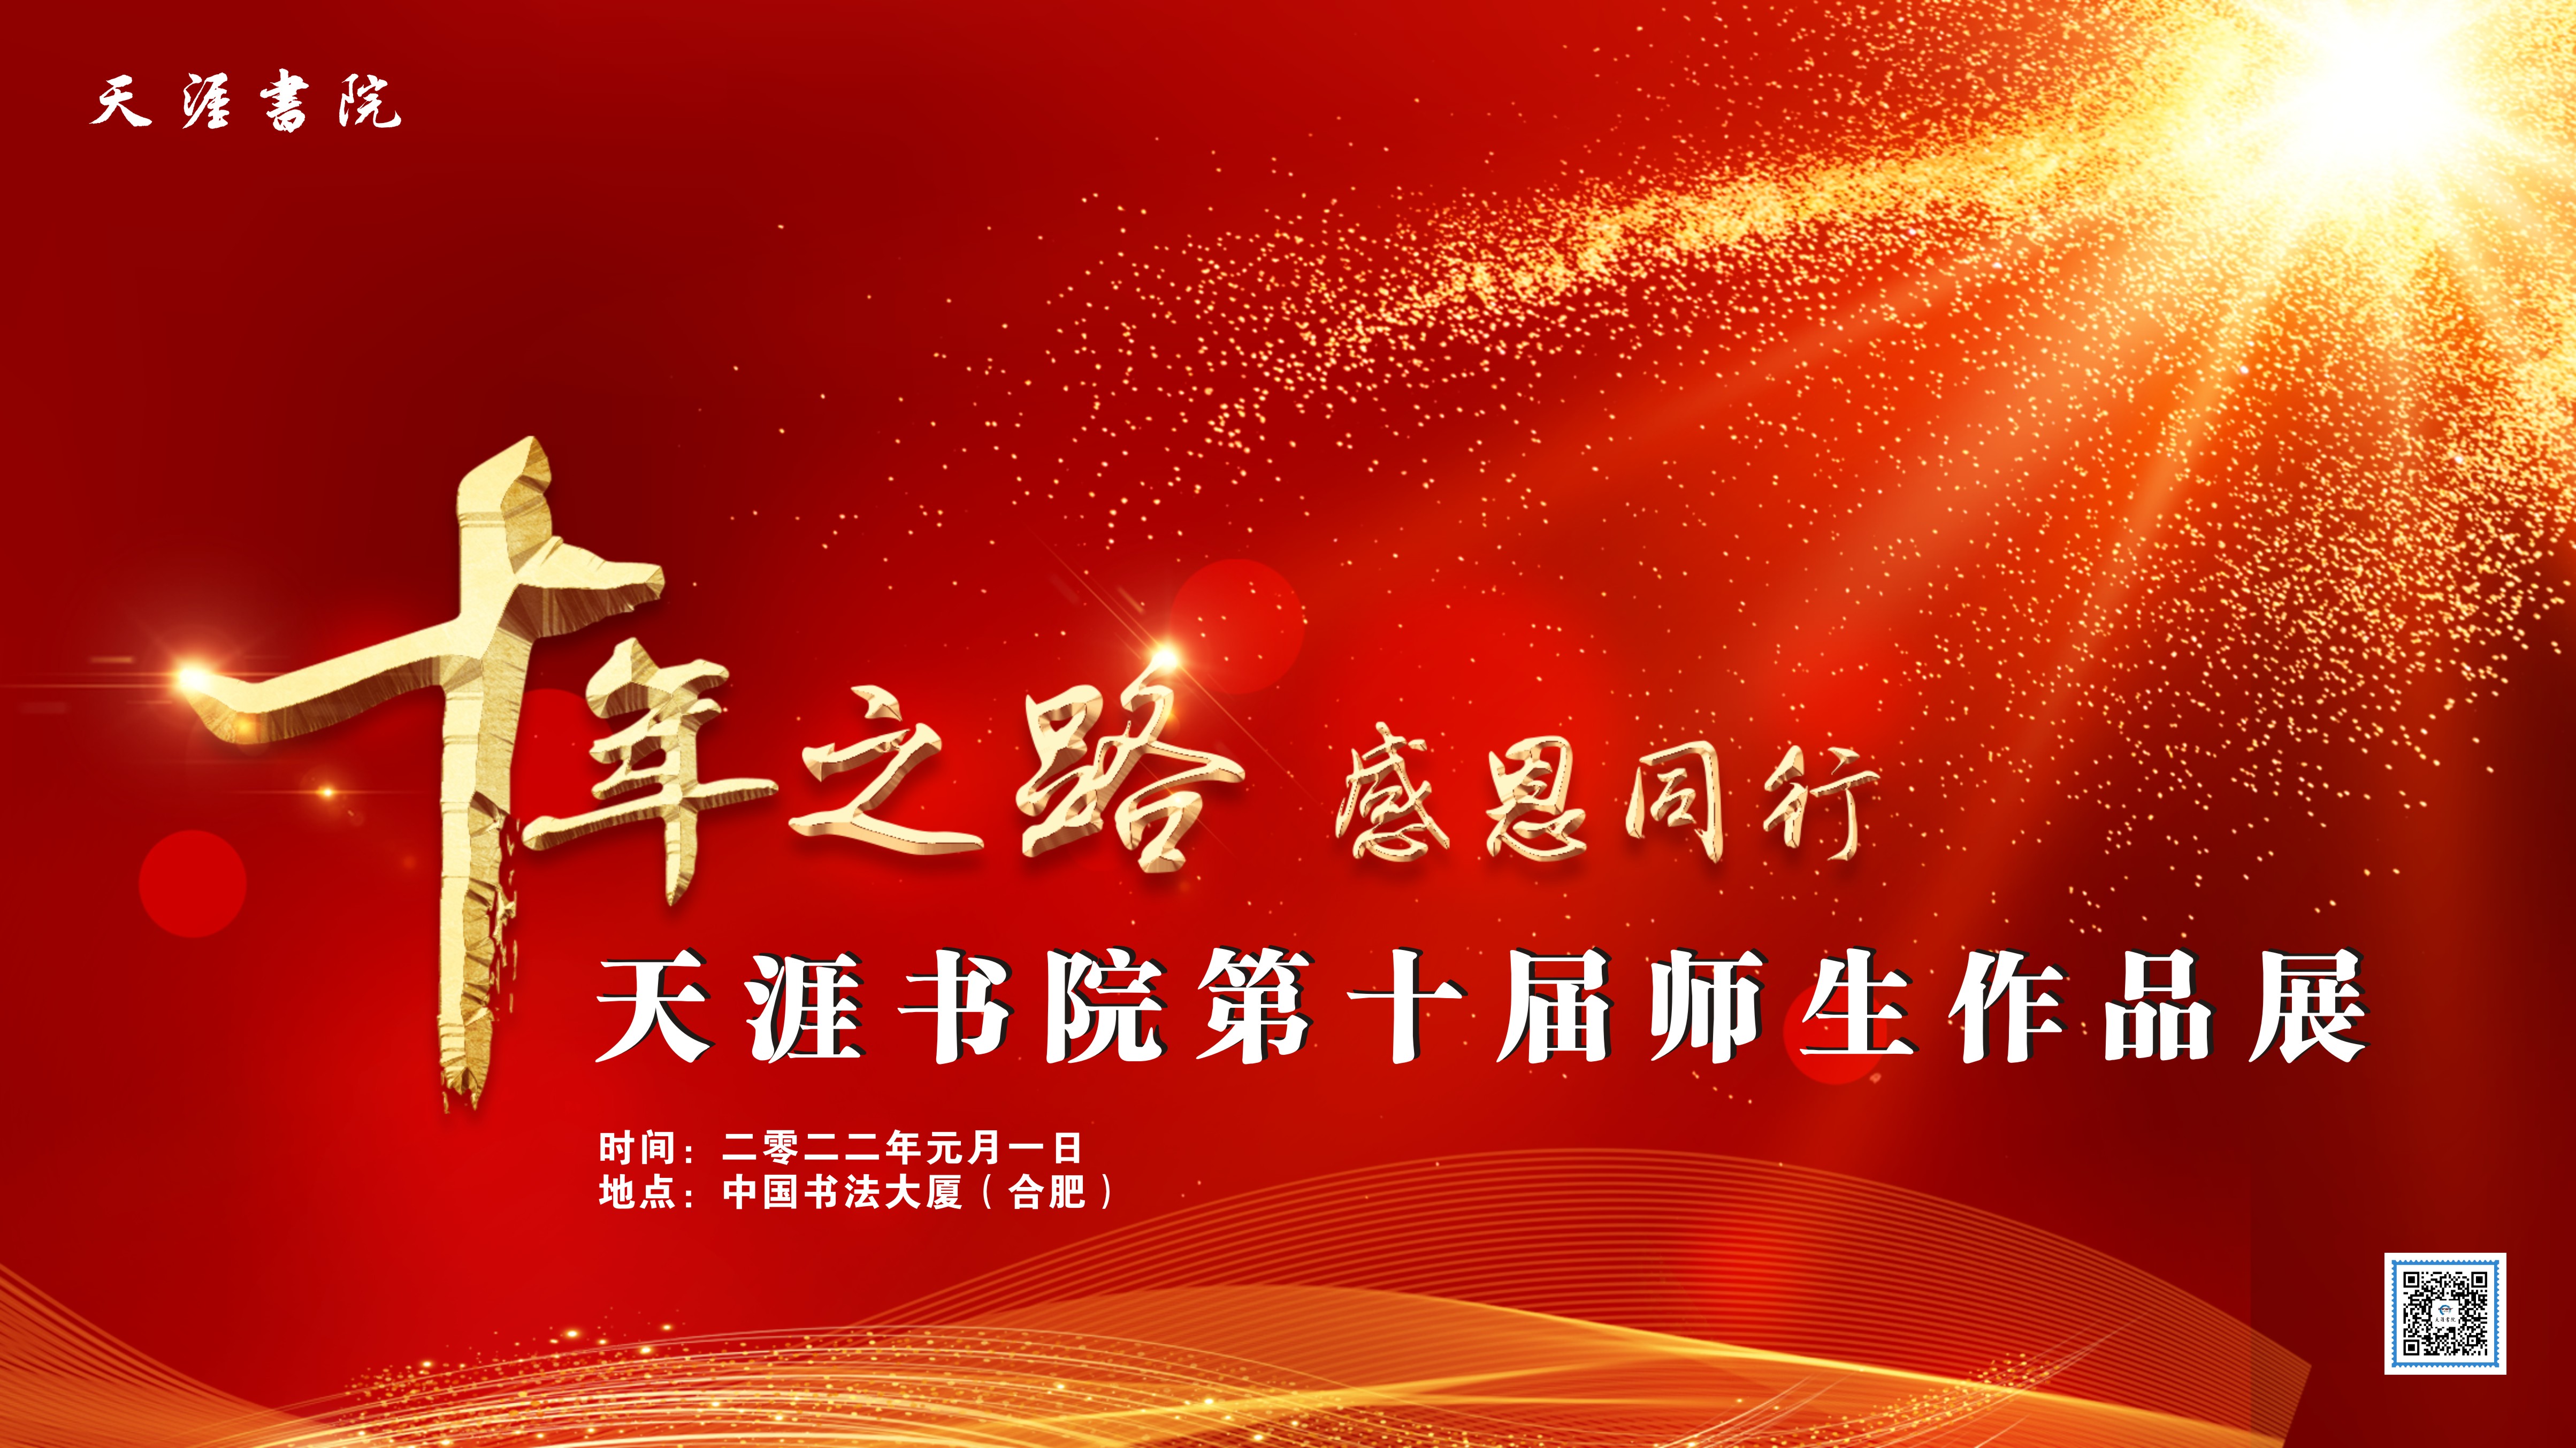 安徽天涯书院第十届师生作品展在中国书法大厦举办